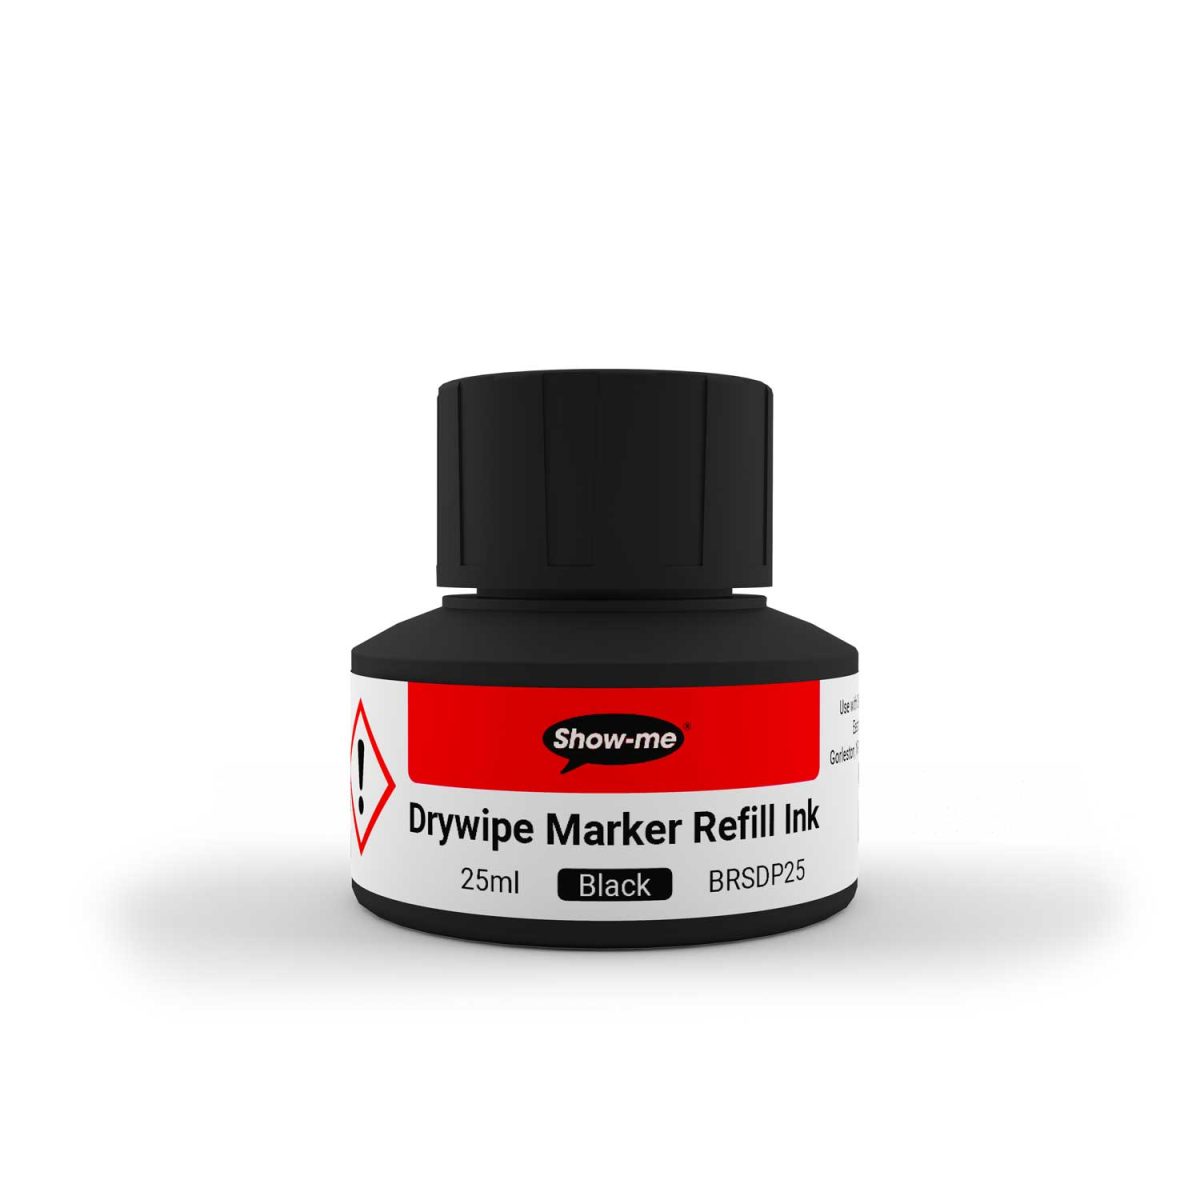 Drywipe Marker Refill Ink – 25ml